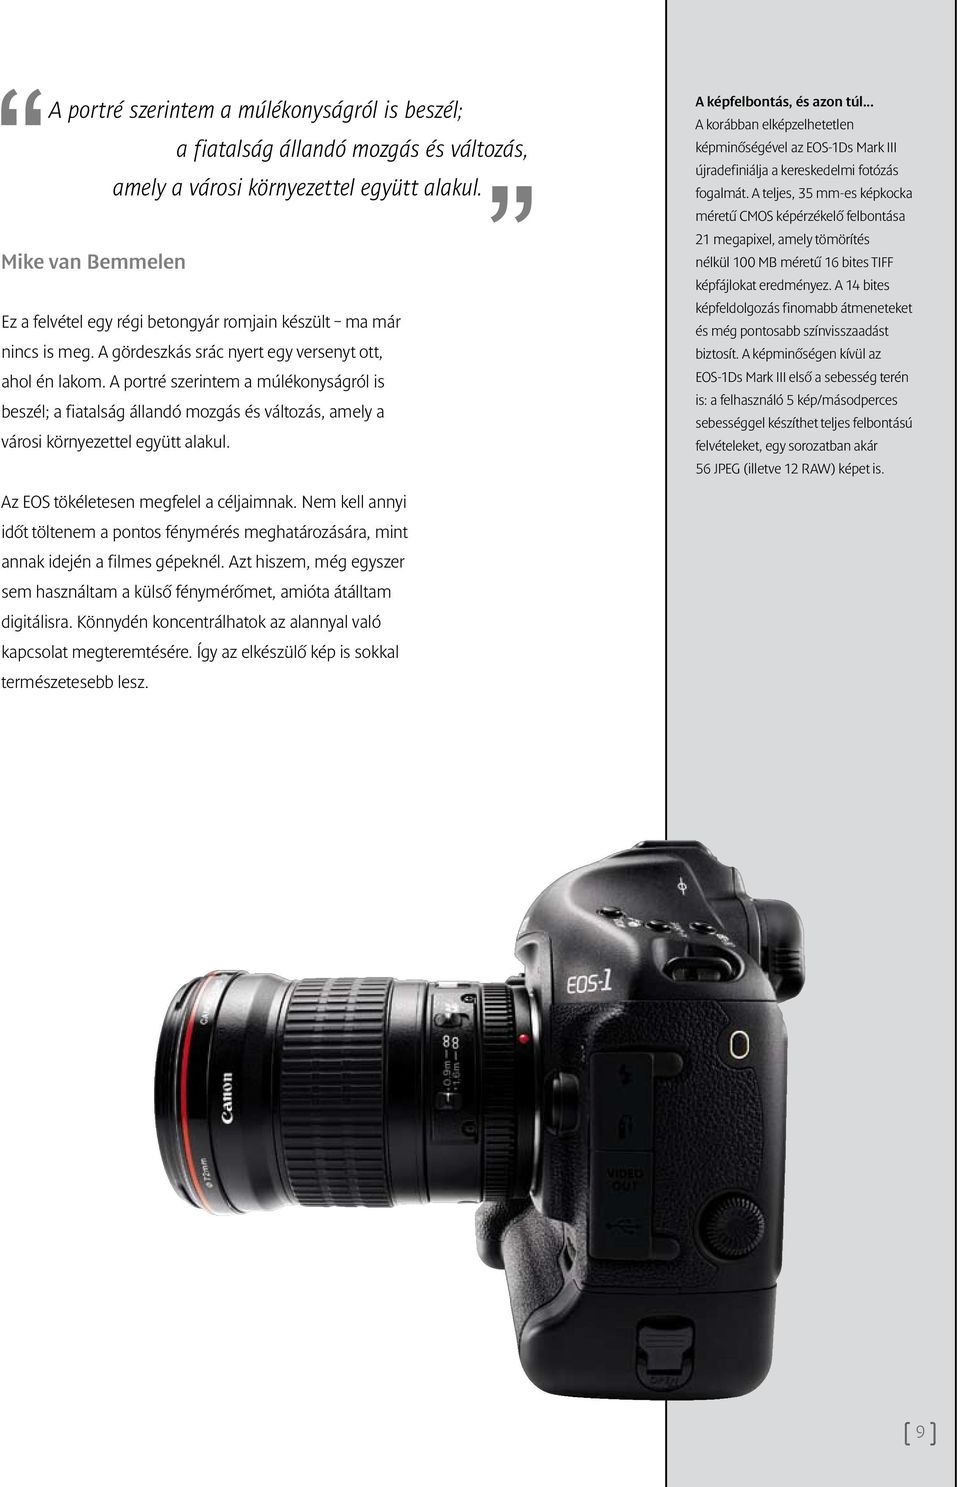 .. A korábban elképzelhetetlen képminőségével az EOS-1Ds Mark III újradefiniálja a kereskedelmi fotózás fogalmát.